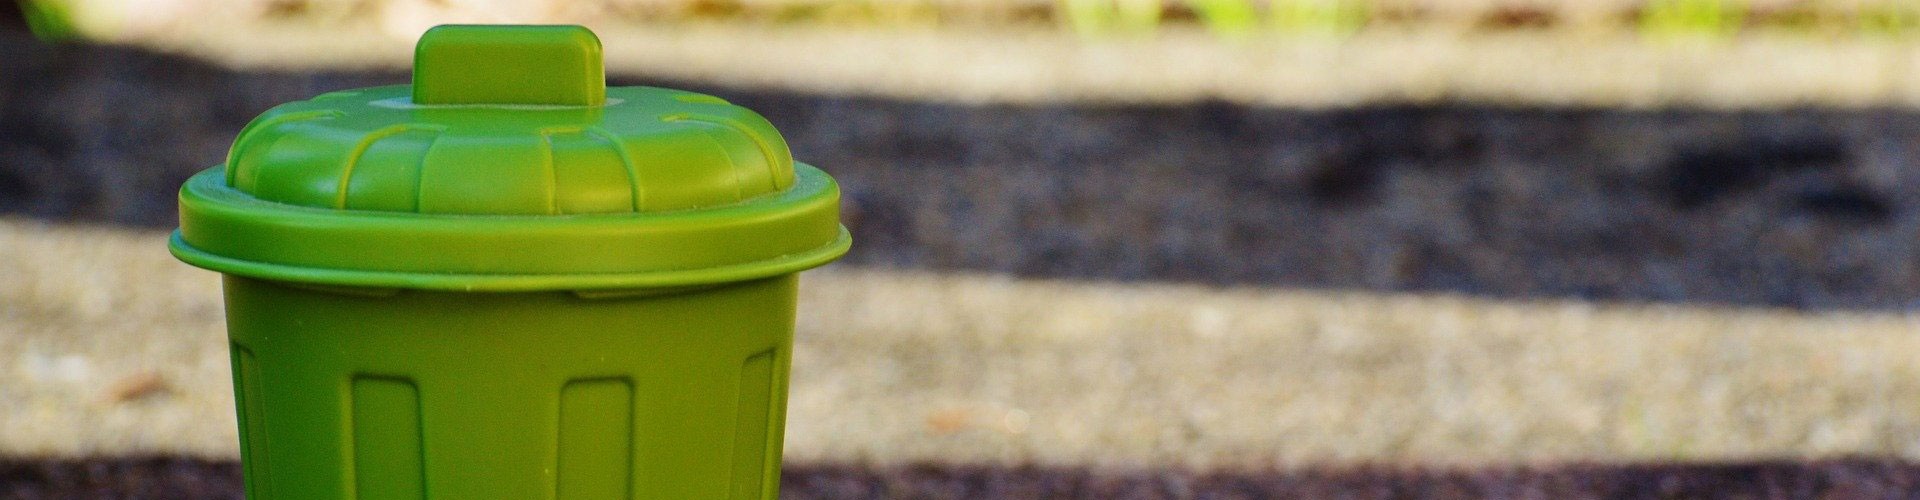 small green plastic rubbish bin on street